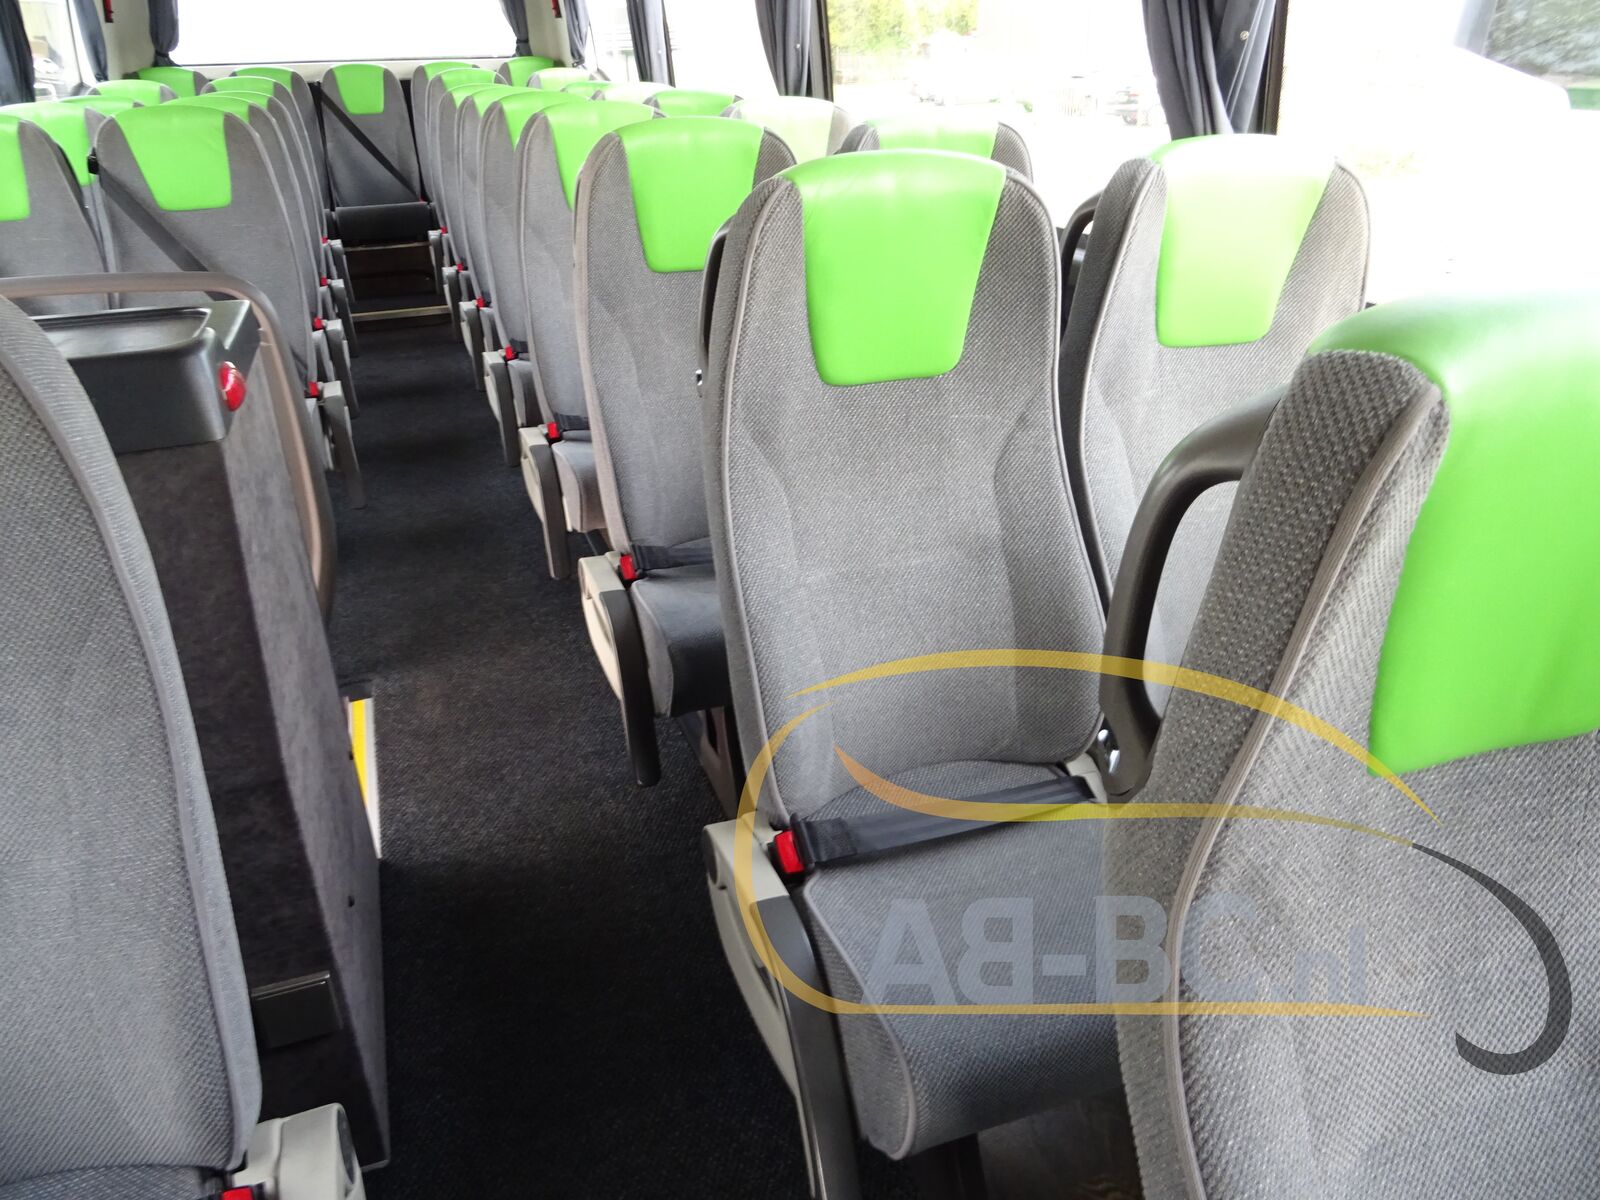 coach-bus-VDL-Futura-FHD2-129-440-51-Seats-EURO-6---1651224592941796969_orig_b97ef5329d8ed84987f8fad8cc2fe2c0--22042912260636414000